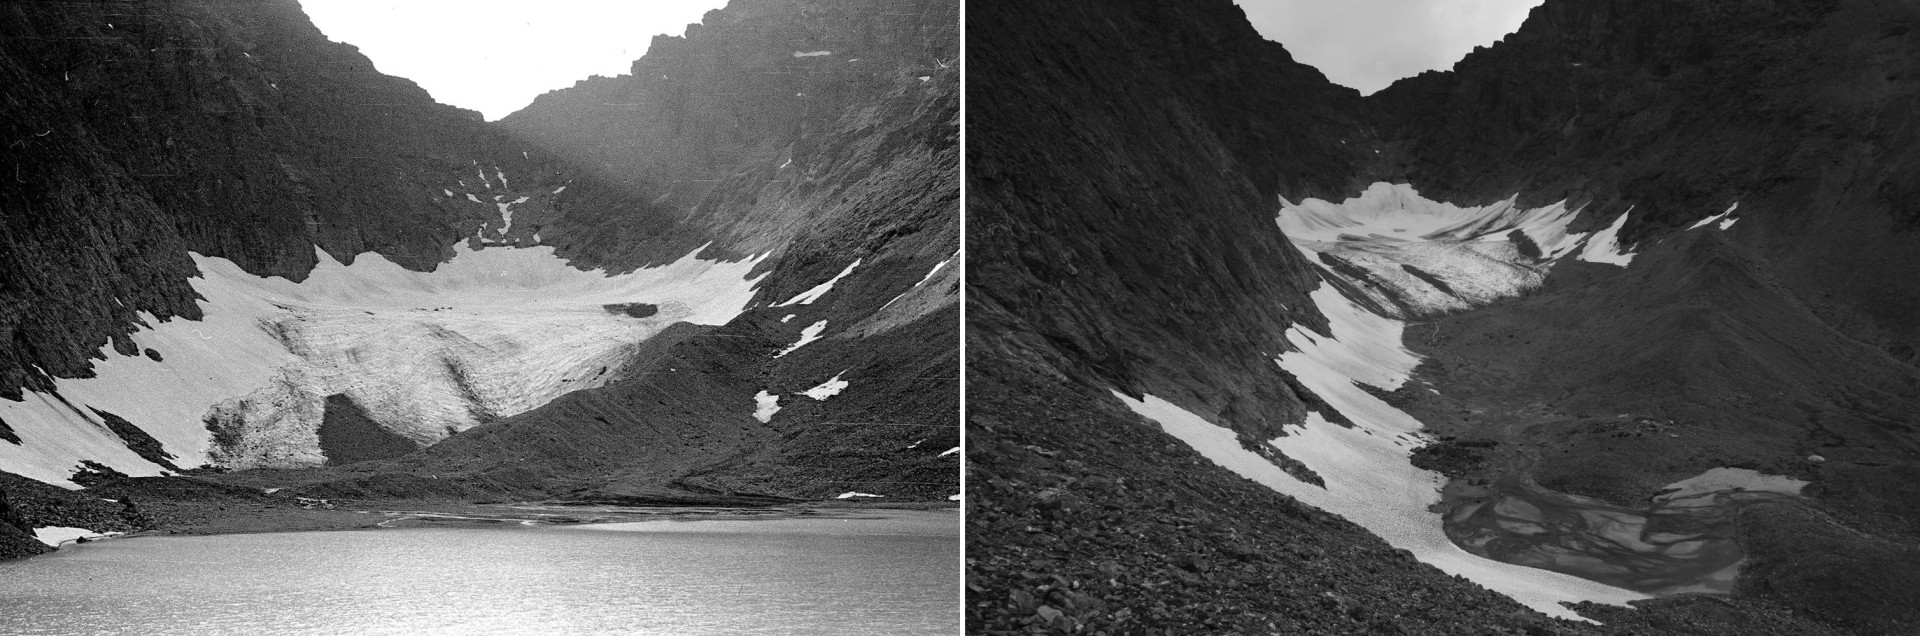 Изменения Ледника Обручева с 1953 (фото слева) к 2005 (фото справа) году. Фото: сайт «Архив изображений ледников России»